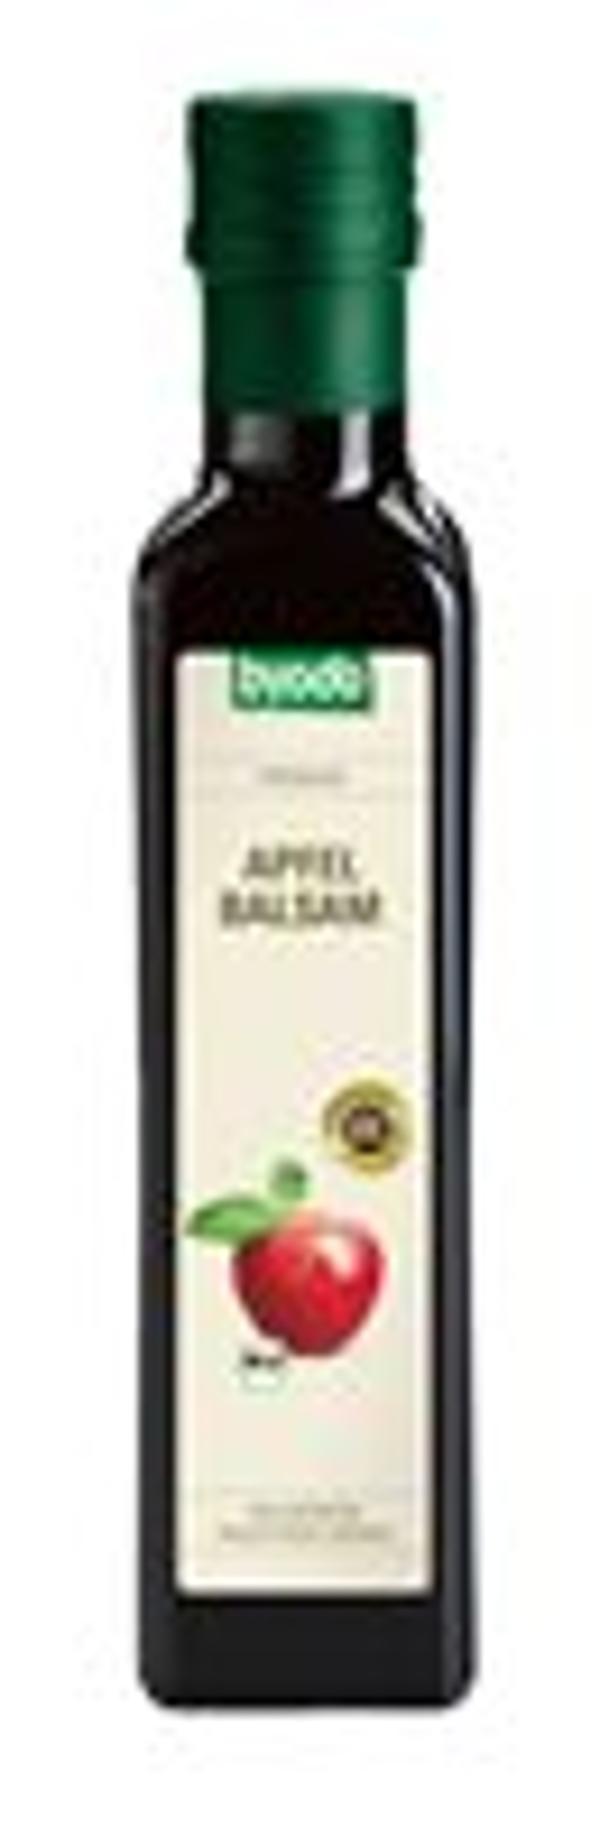 Produktfoto zu Balsam Essig Apfel 5% Säure, 250ml